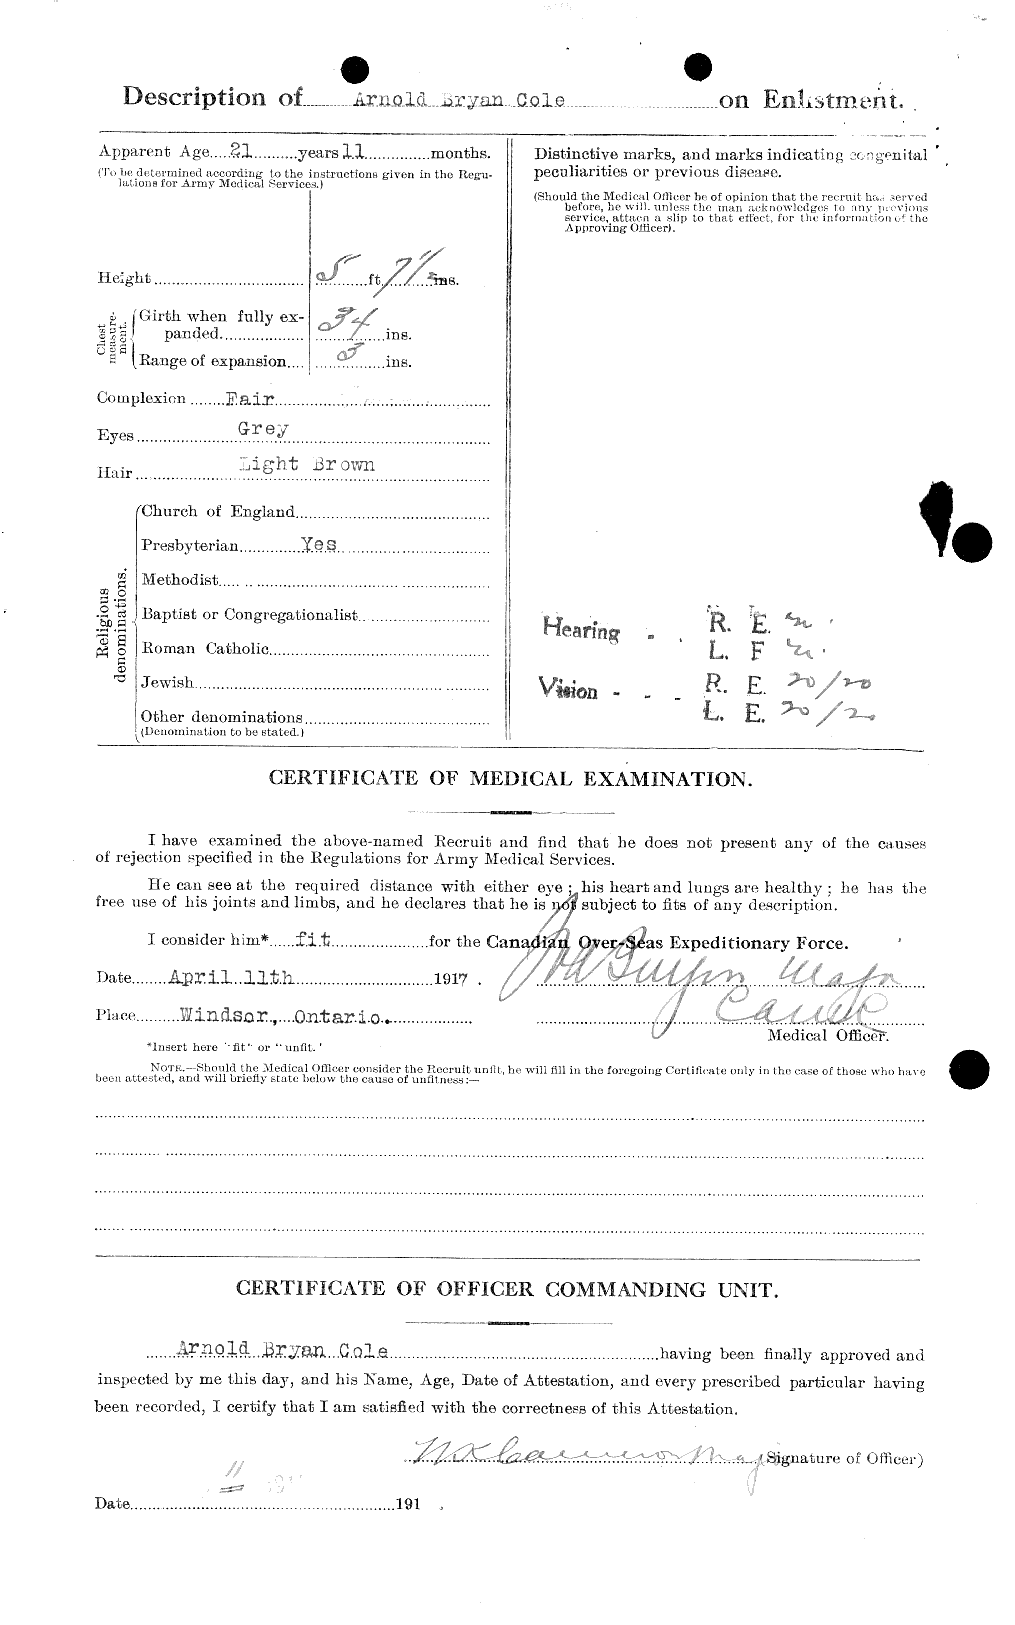 Dossiers du Personnel de la Première Guerre mondiale - CEC 027594b